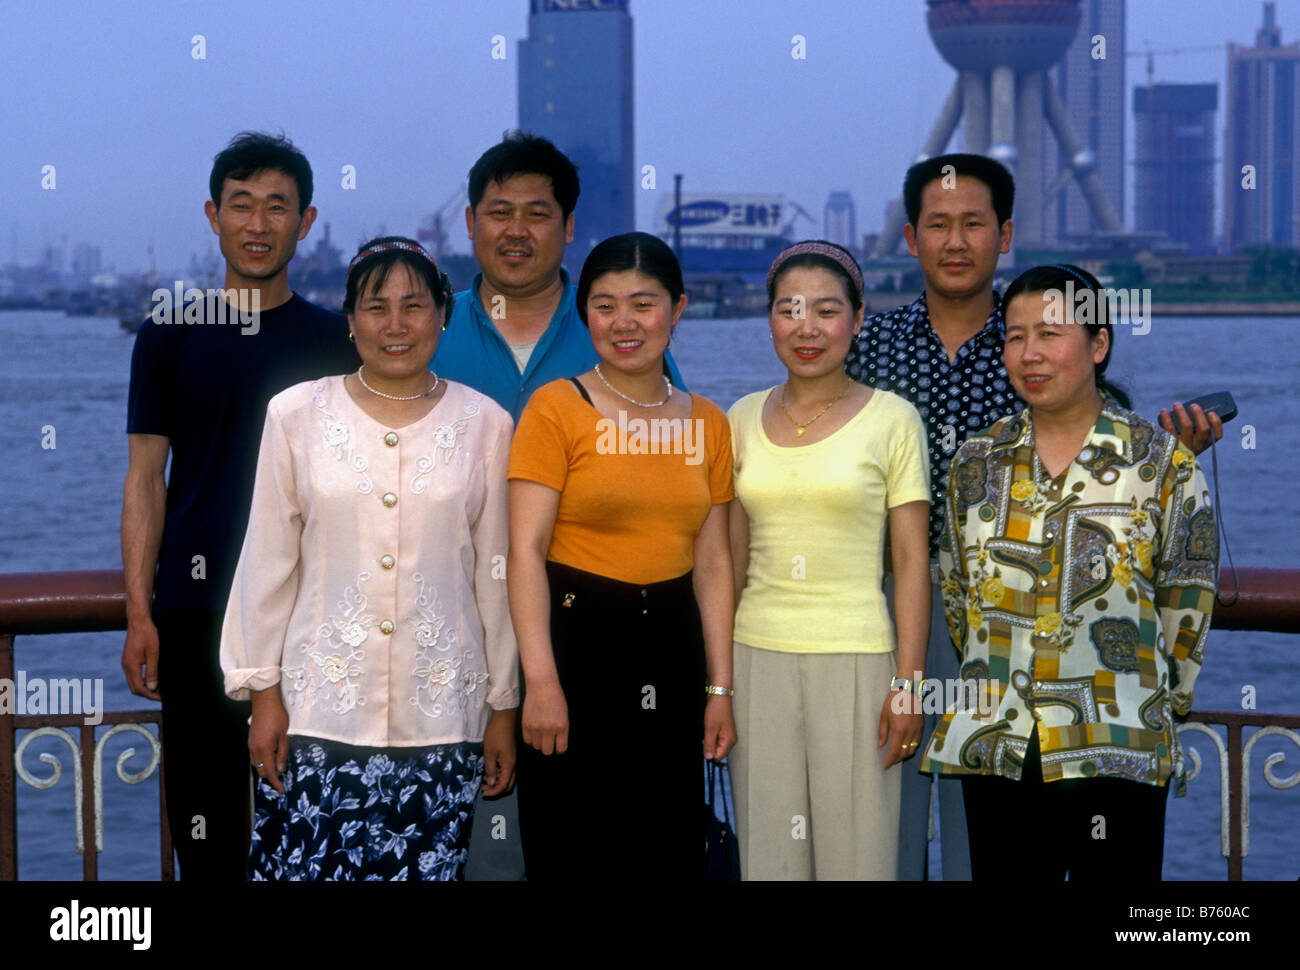 Il popolo cinese, famiglia cinese, ritratto di famiglia, contatto visivo, vista frontale, ritratto, il Bund, waitan, comune di shanghai, Cina Foto Stock